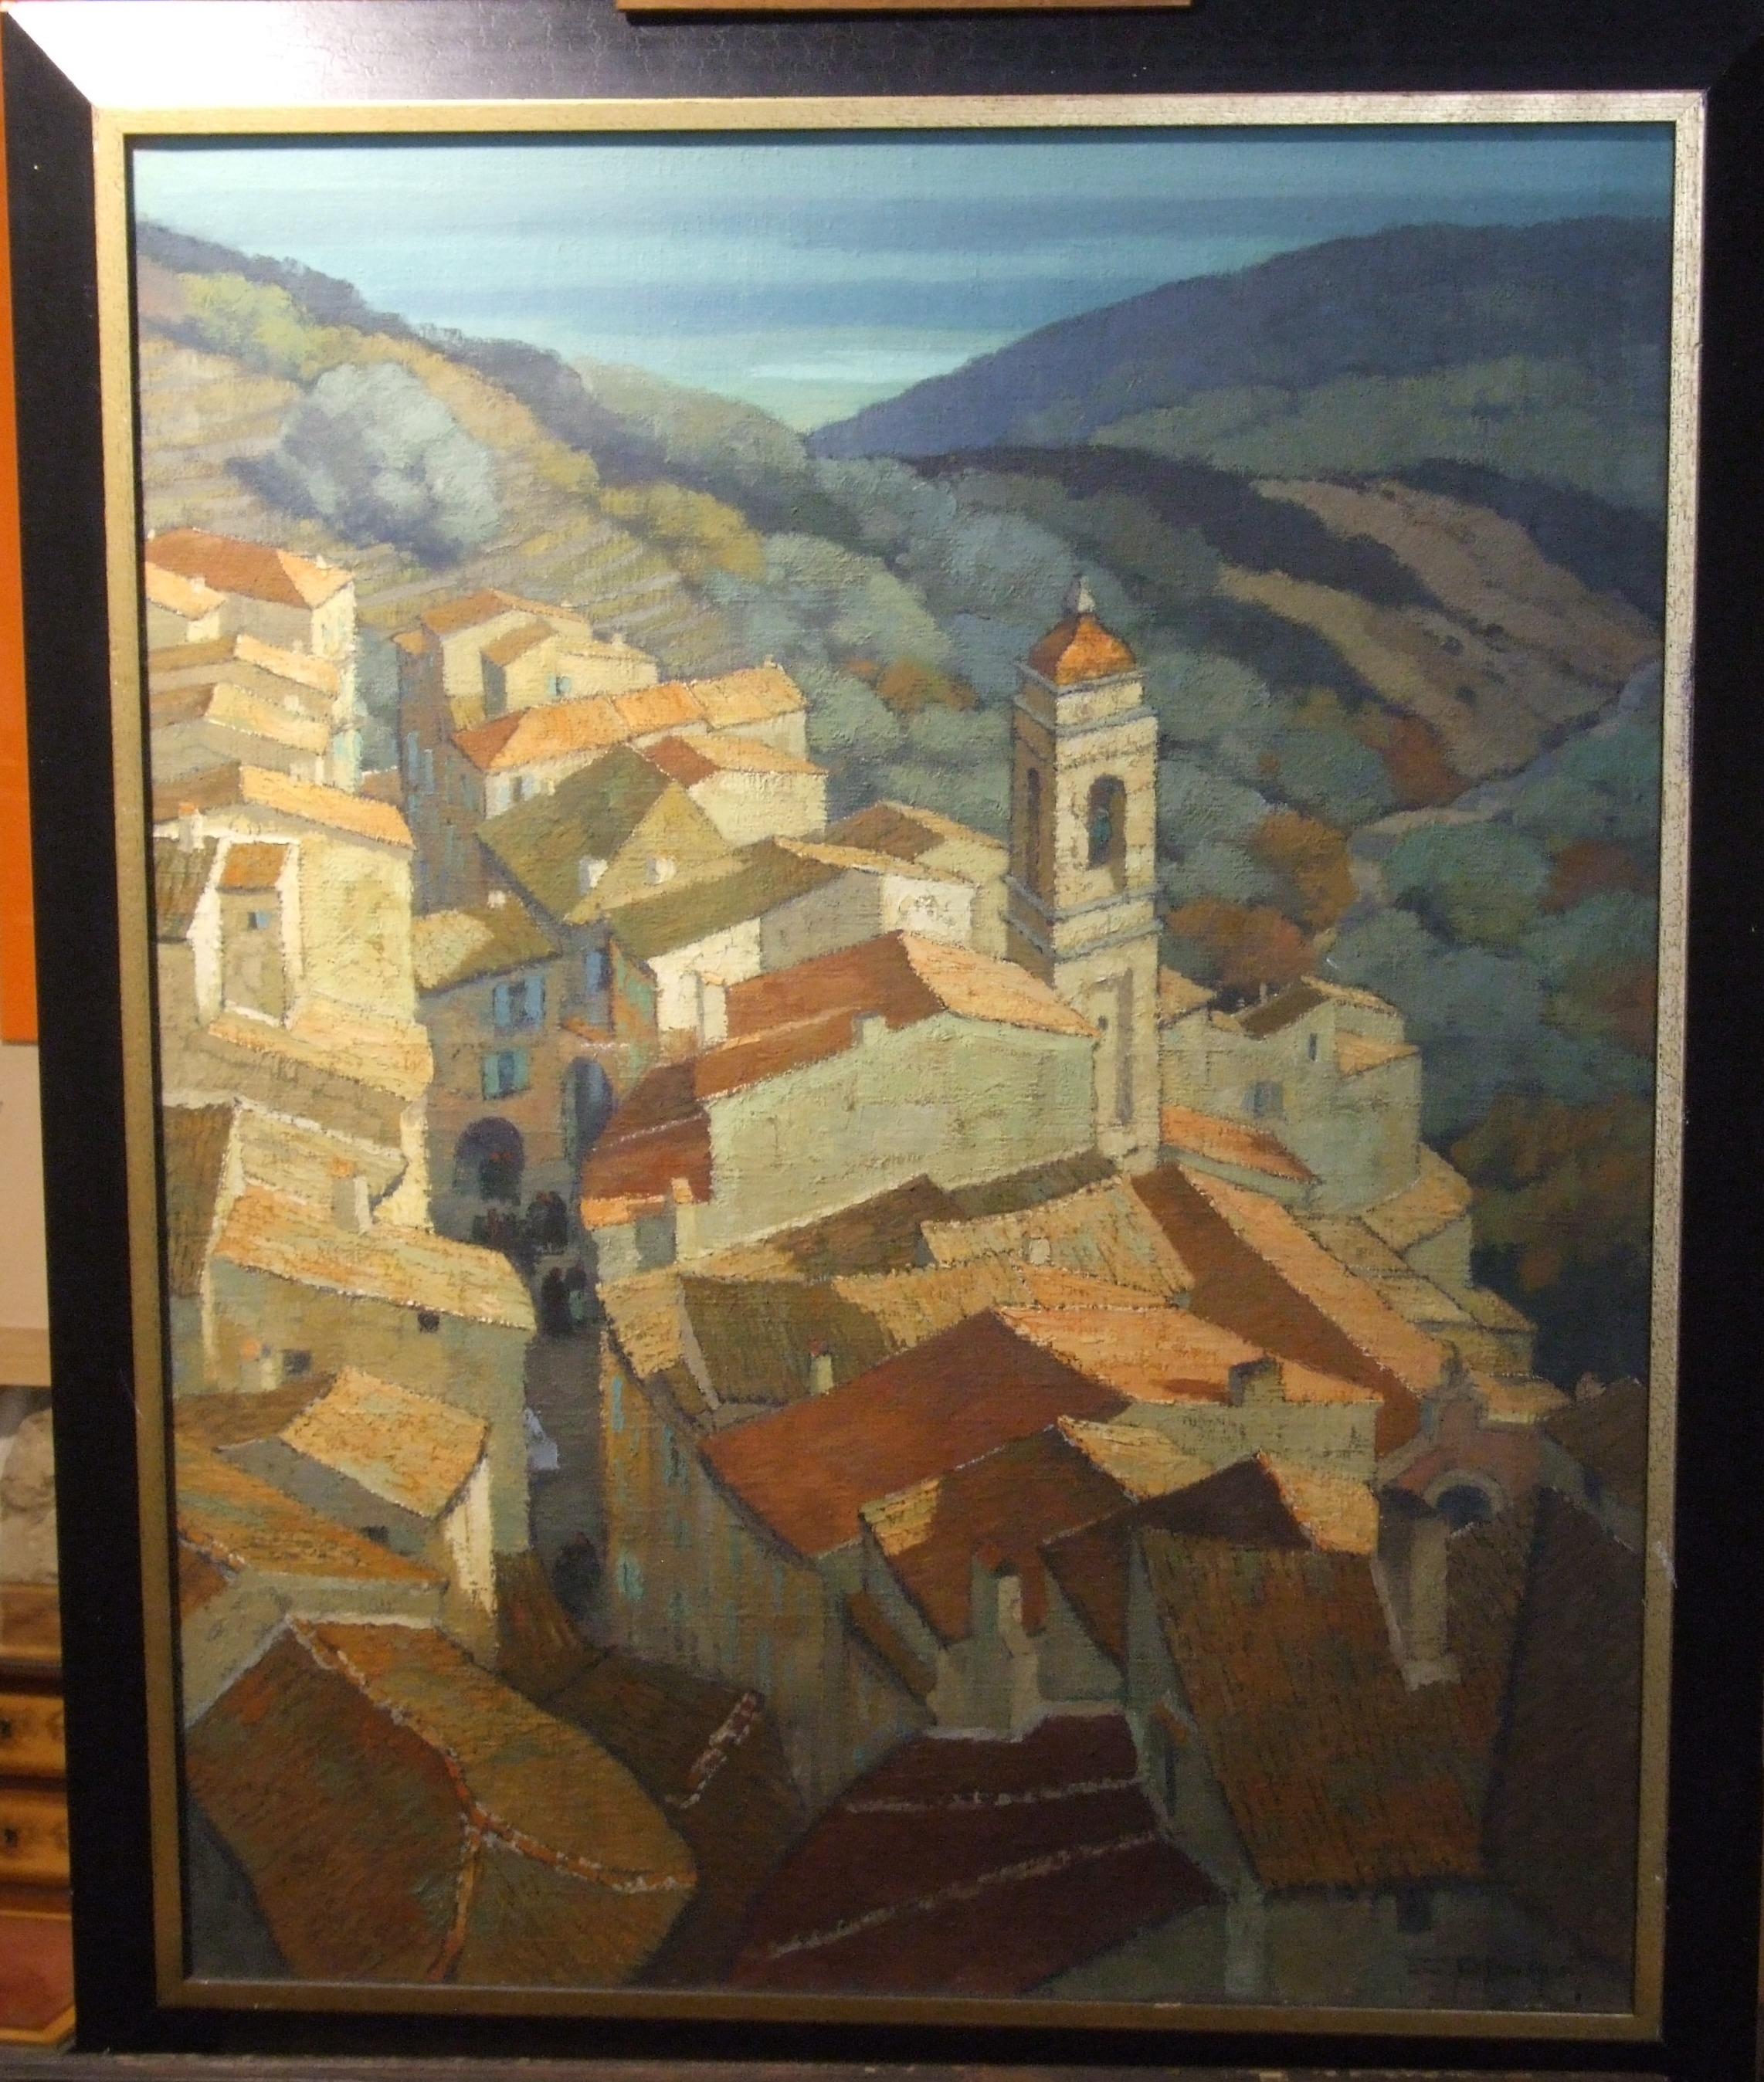 Village de l’arrière pays Niçois (Sud de la France) - Huile sur toile, 92x73 cm. - Painting by Edouard Planchais